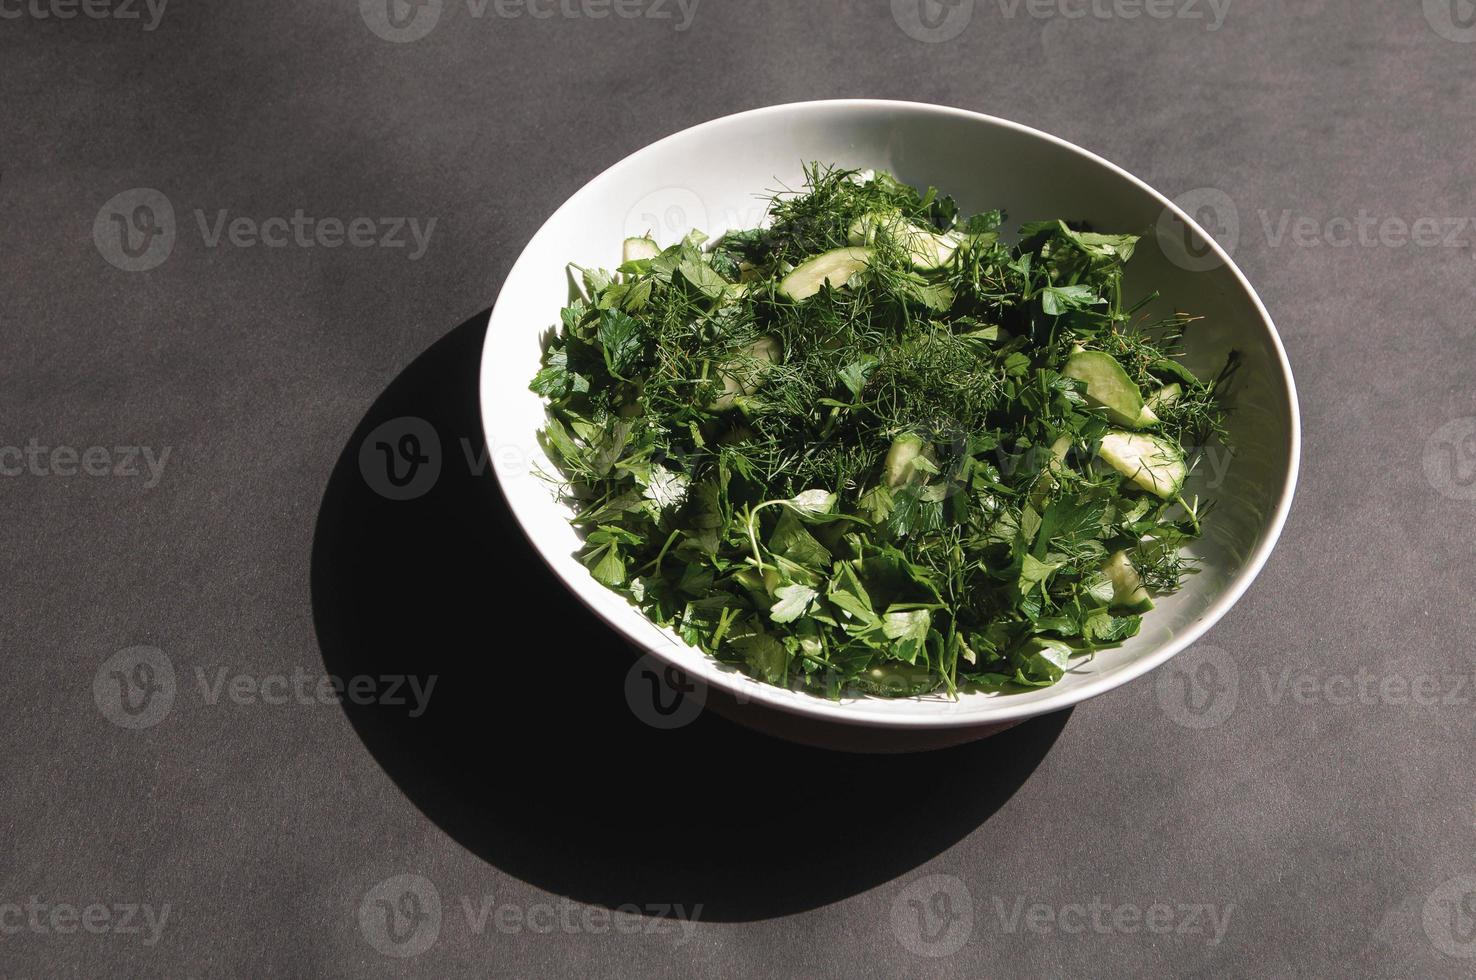 Salade met dille en peterseliekomkommers op plaat een grijze achtergrond foto